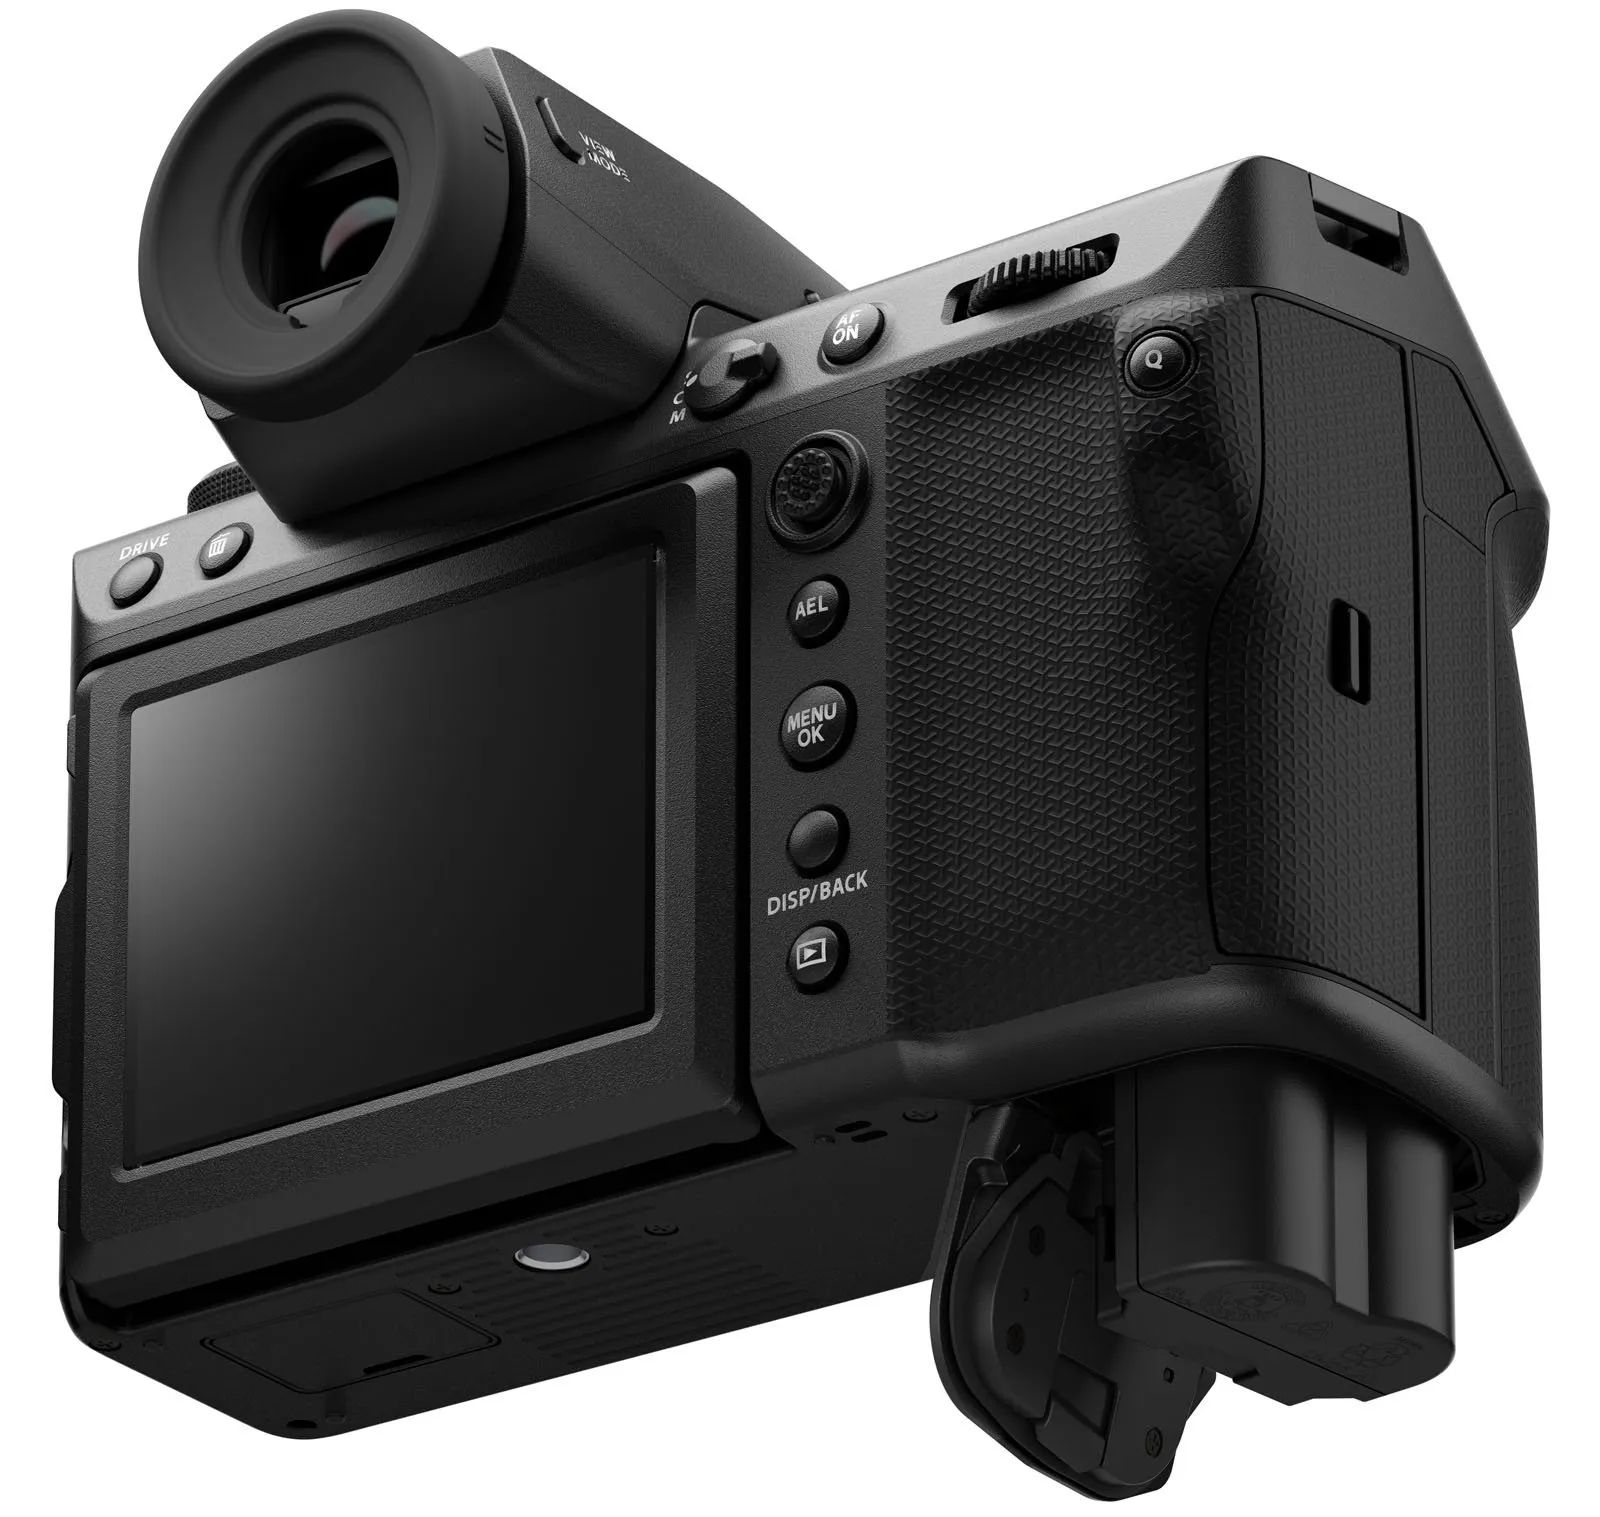 Fujifilm GFX 100 II ra mắt với khả năng quay video 8K và tích hợp lấy nét AI